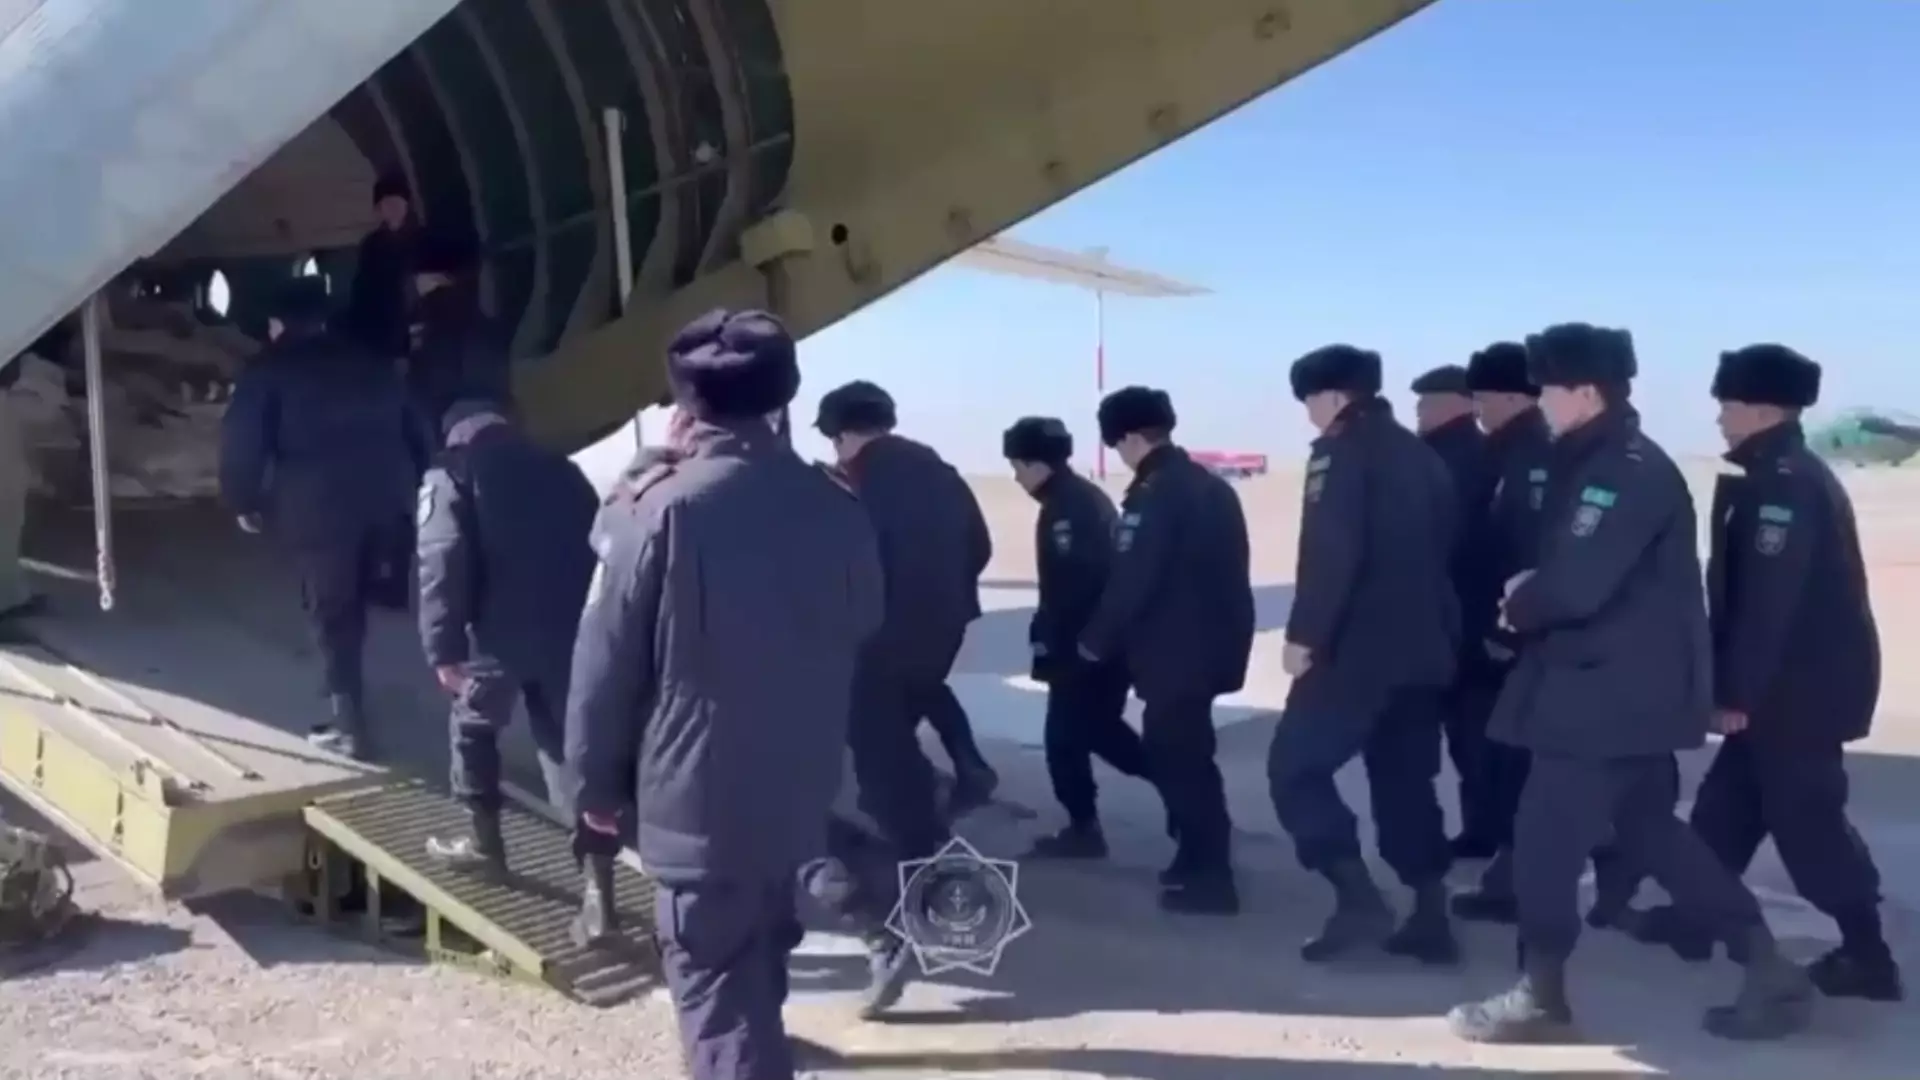 No comments: казахстанцы продолжают бороться с последствиями большой воды